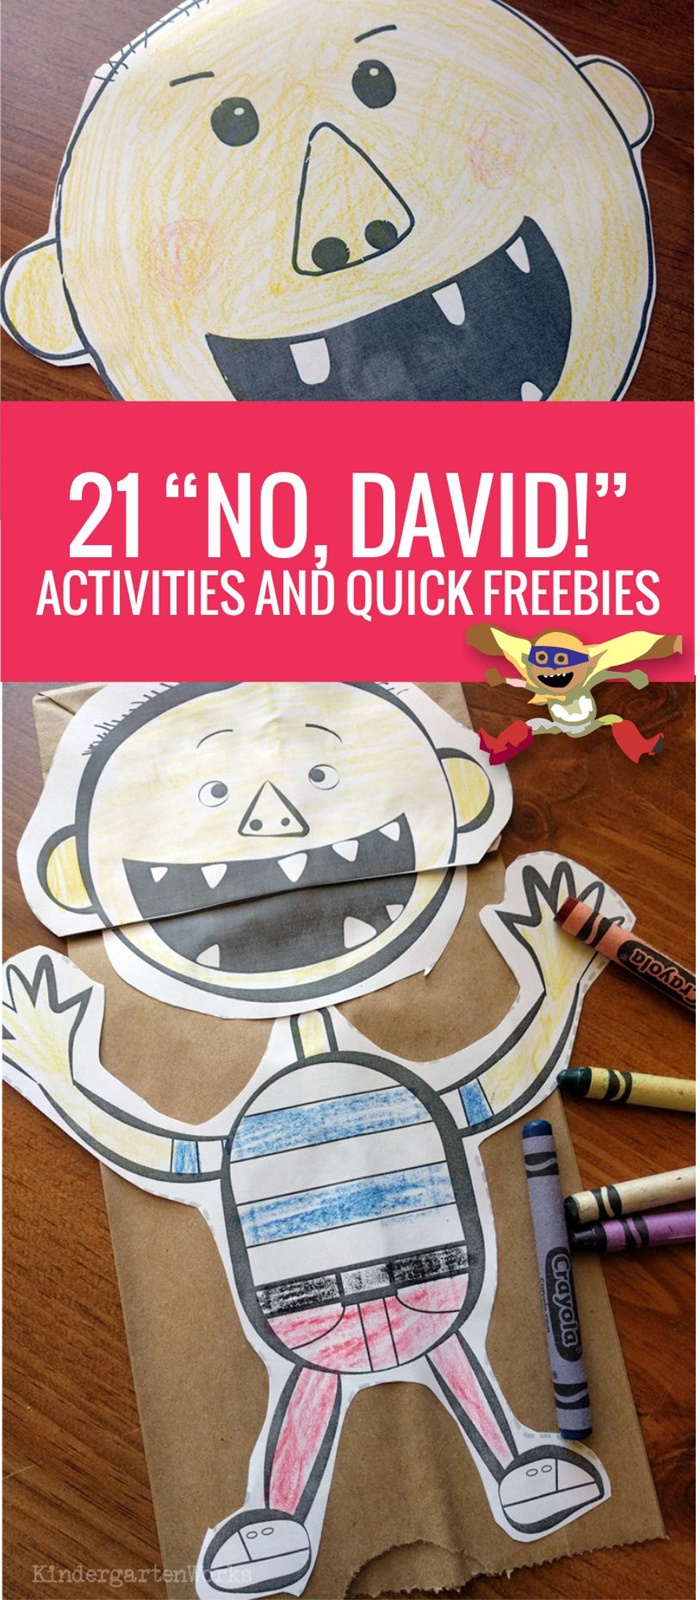 kindergarten activity books printable 21 KindergartenWorks and No Freebies   Activities David Quick